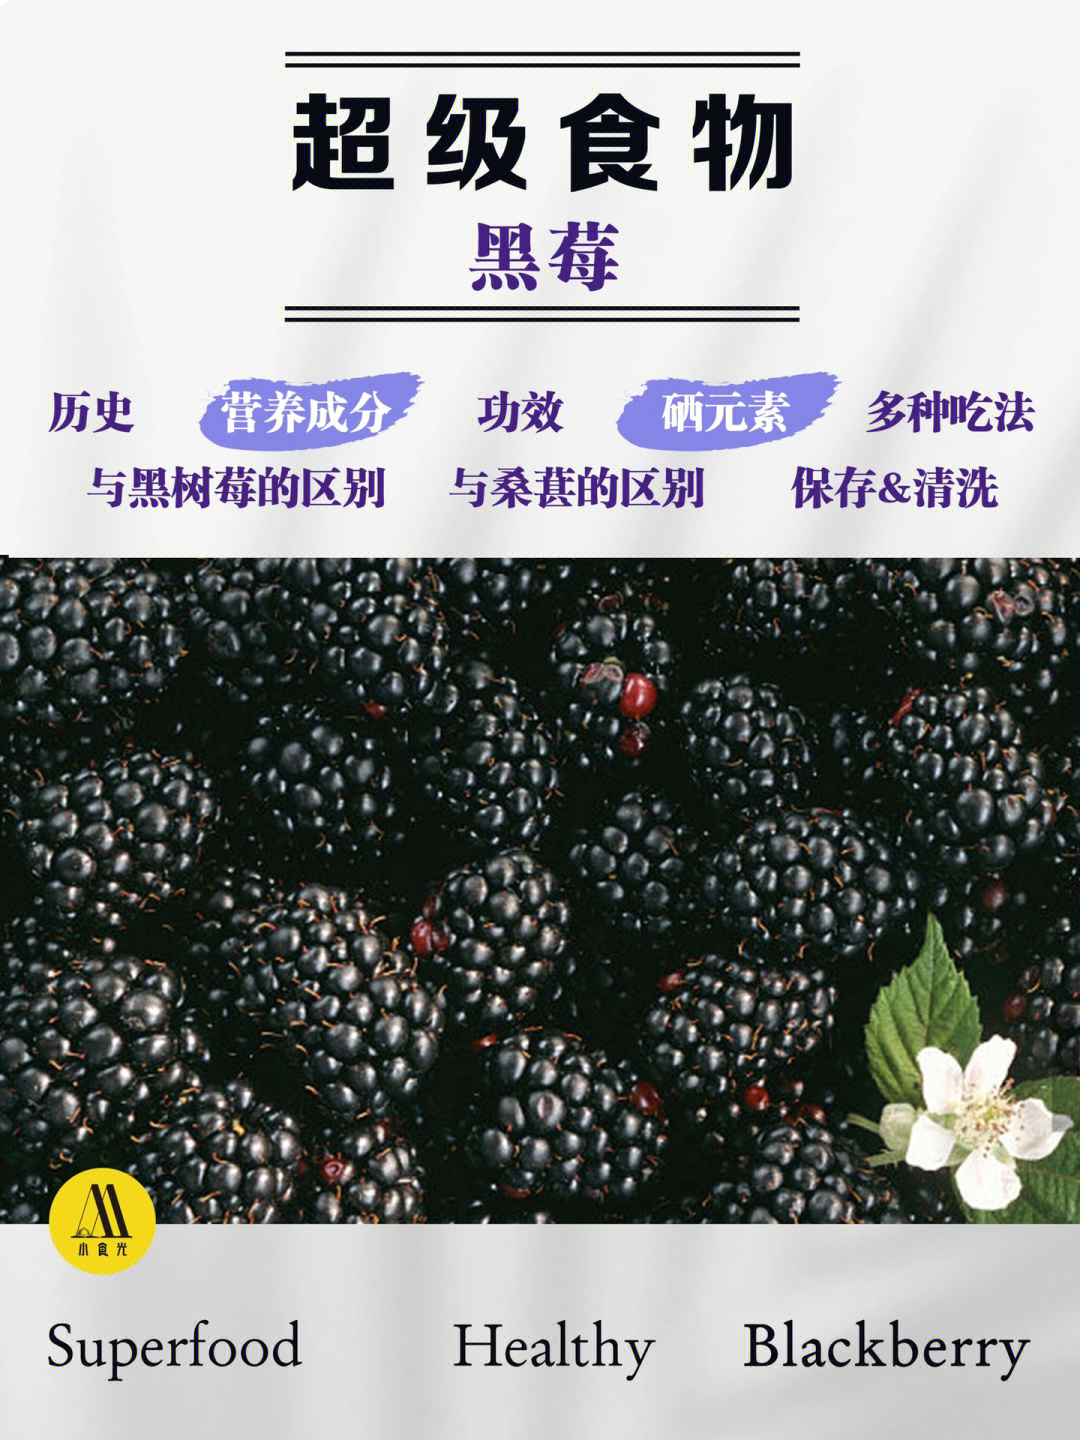 7515历史追溯黑莓也称露霉,原产地北美洲,属蔷薇科悬钩子多年生藤